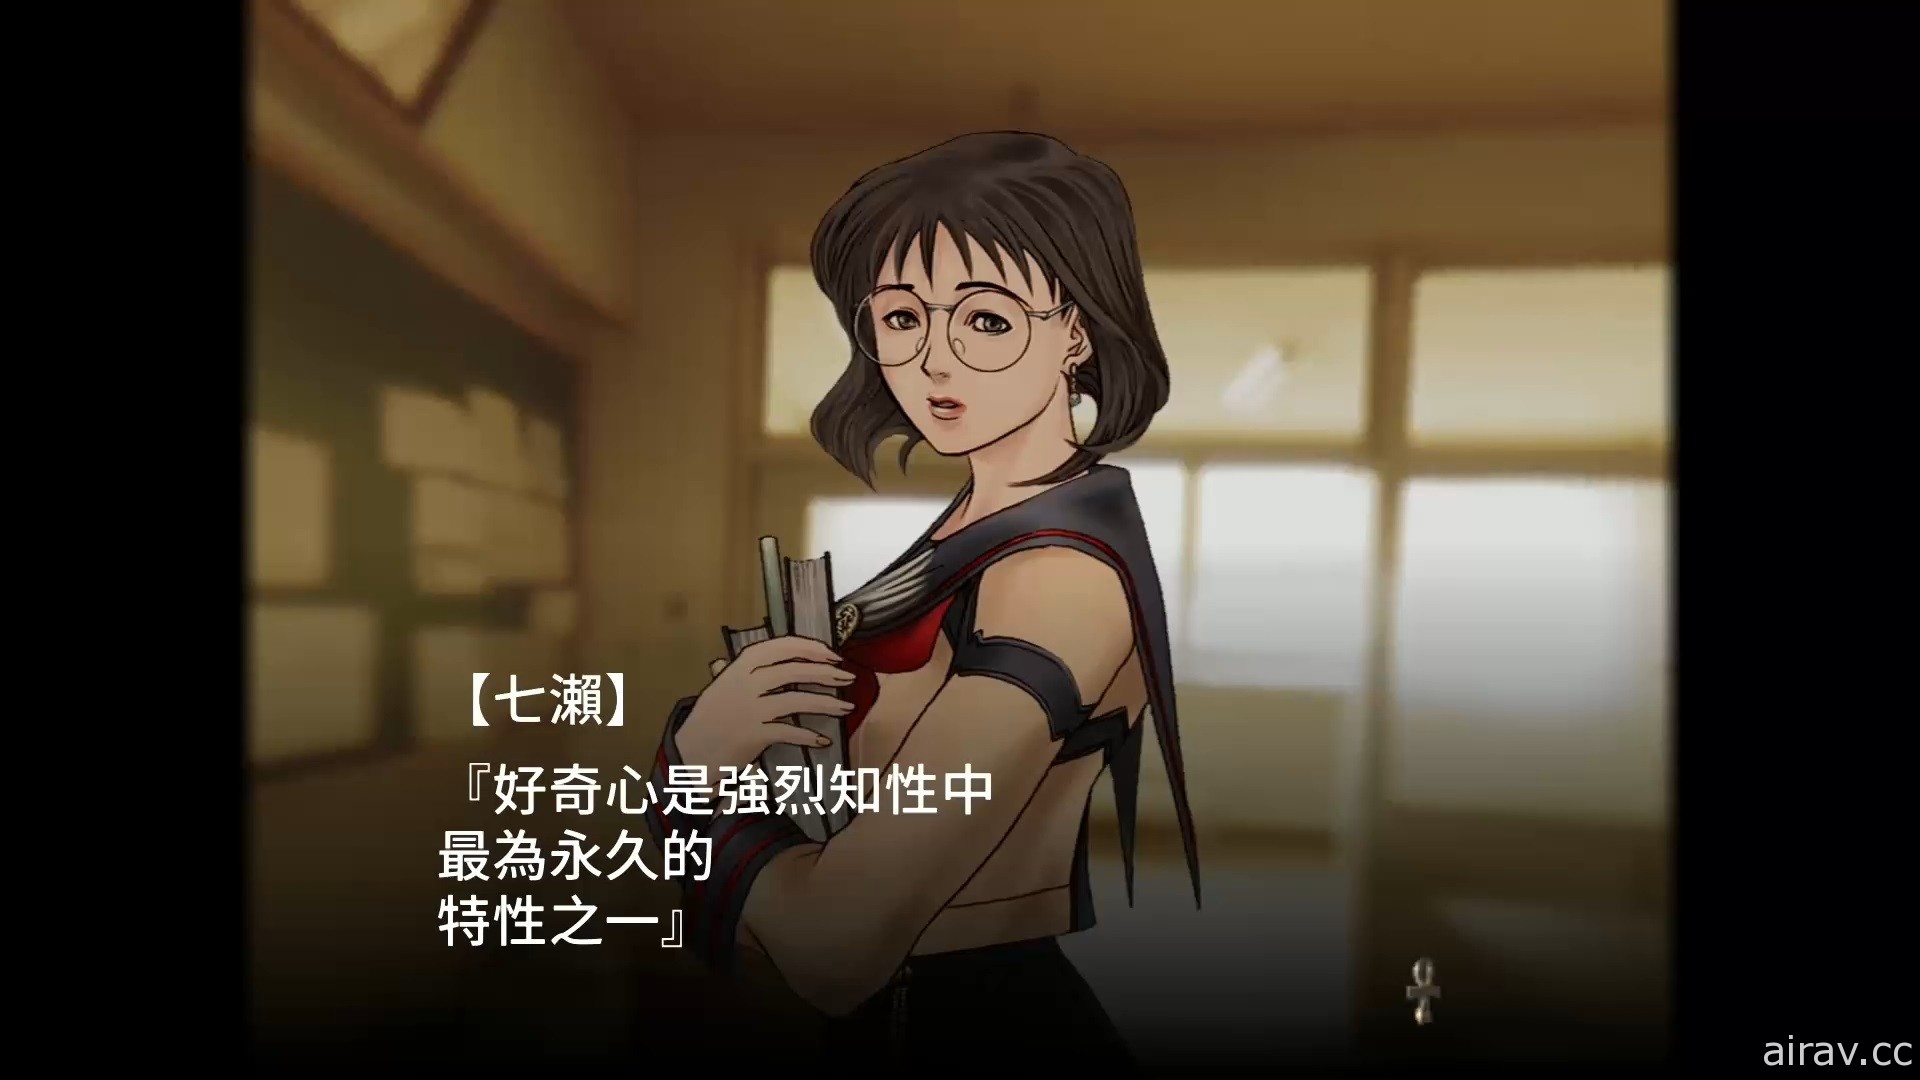 《九龙妖魔学园纪 ORIGIN OF ADVENTURE》PS4 中文数位下载版今日上市